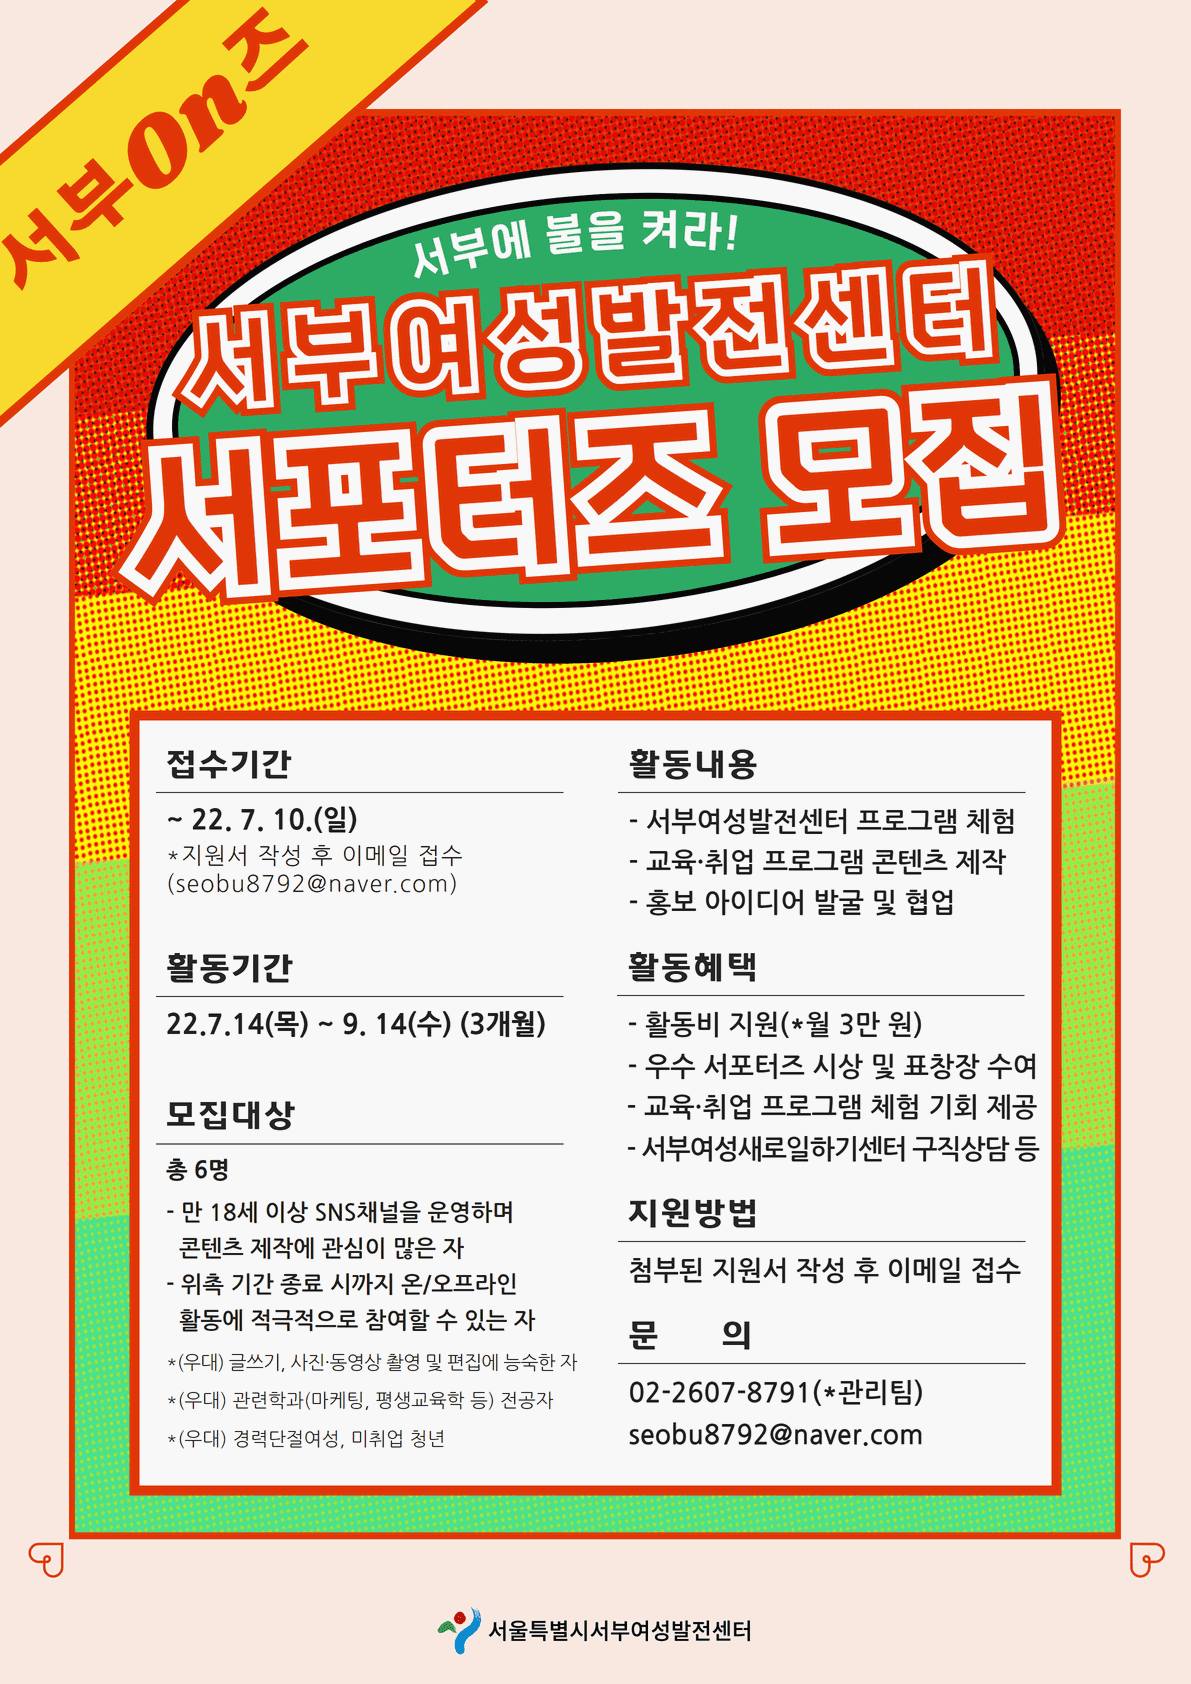 서울특별시 서부여성발전센터 서포터즈 <서부On즈 2기> 모집!